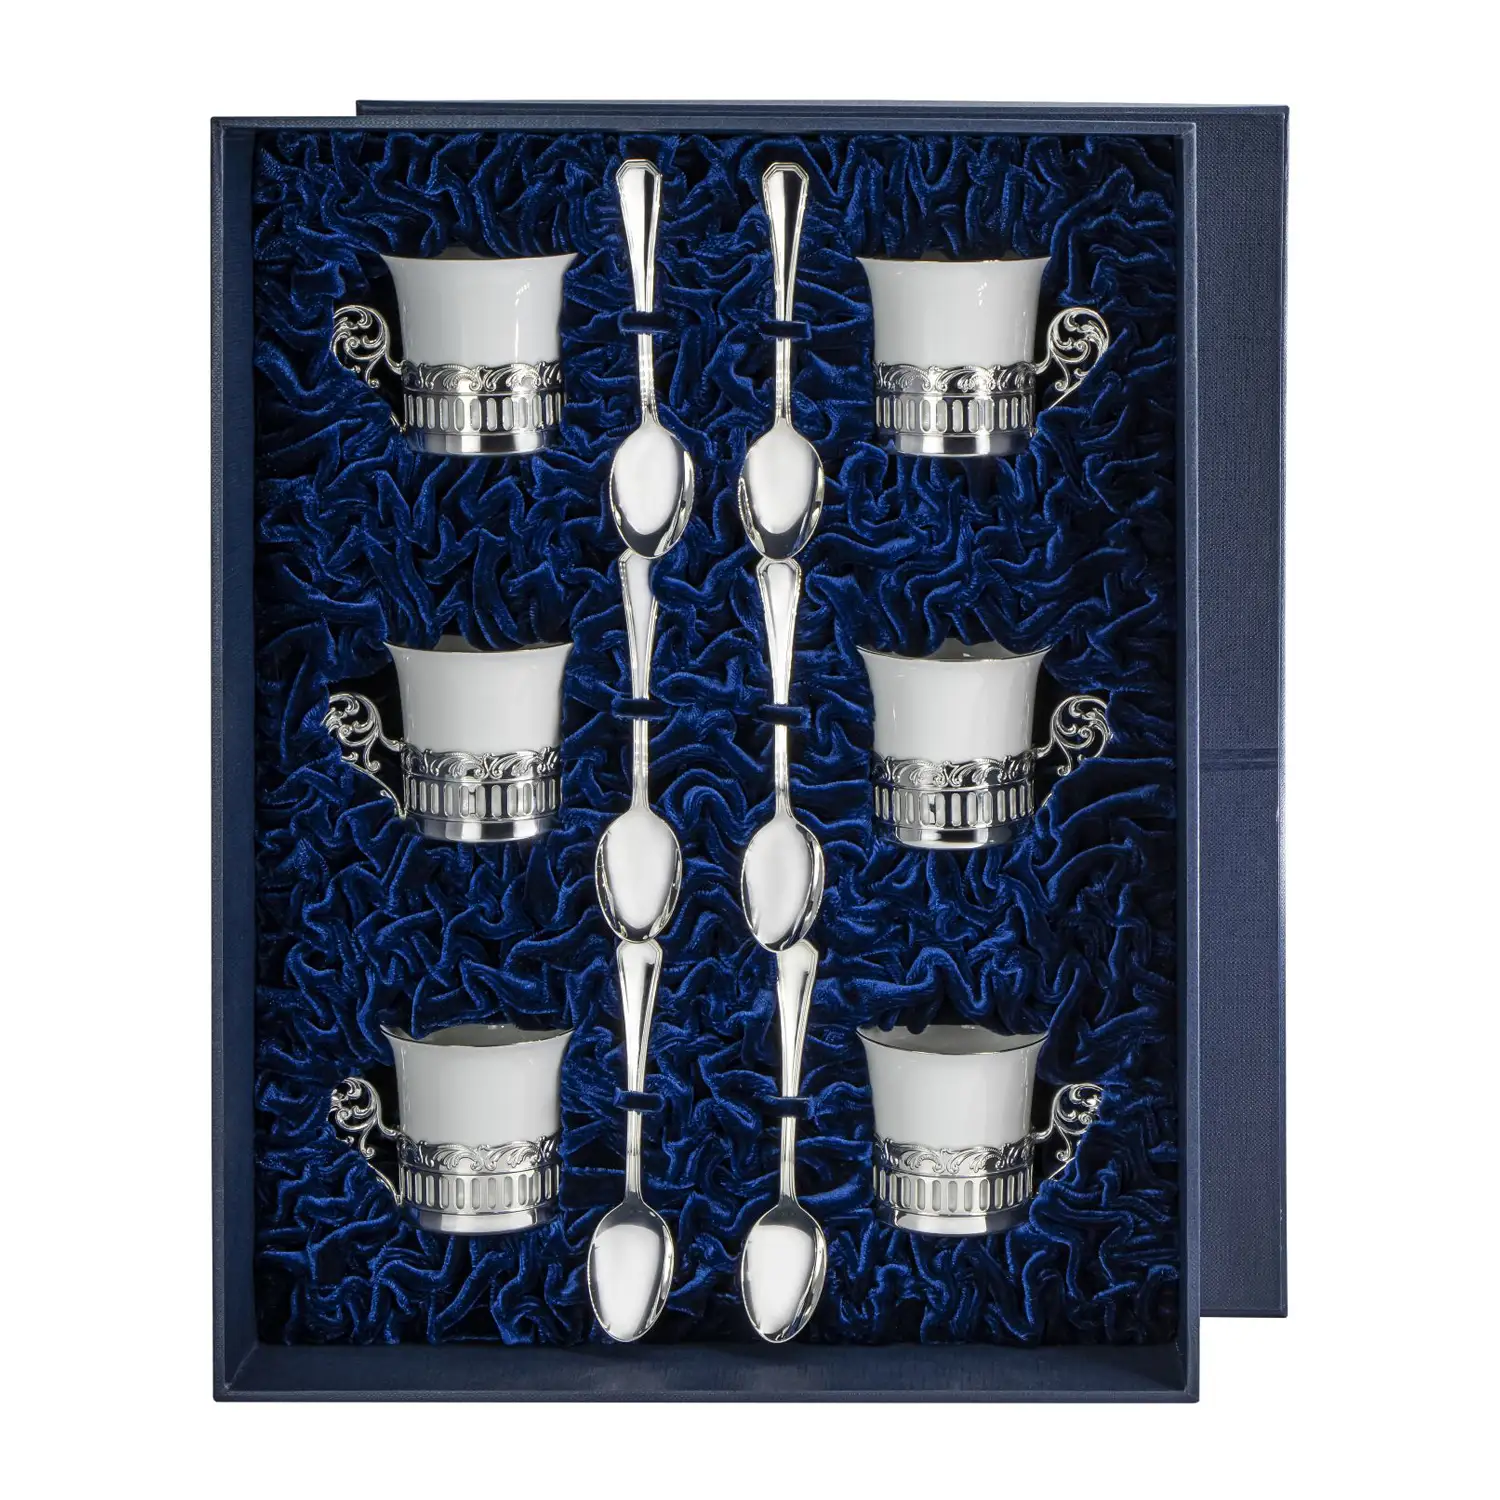 Набор кофейных чашек Богема: ложка, чашка на 6 персон (Серебро 925) набор кофейных чашек богема серебро 925